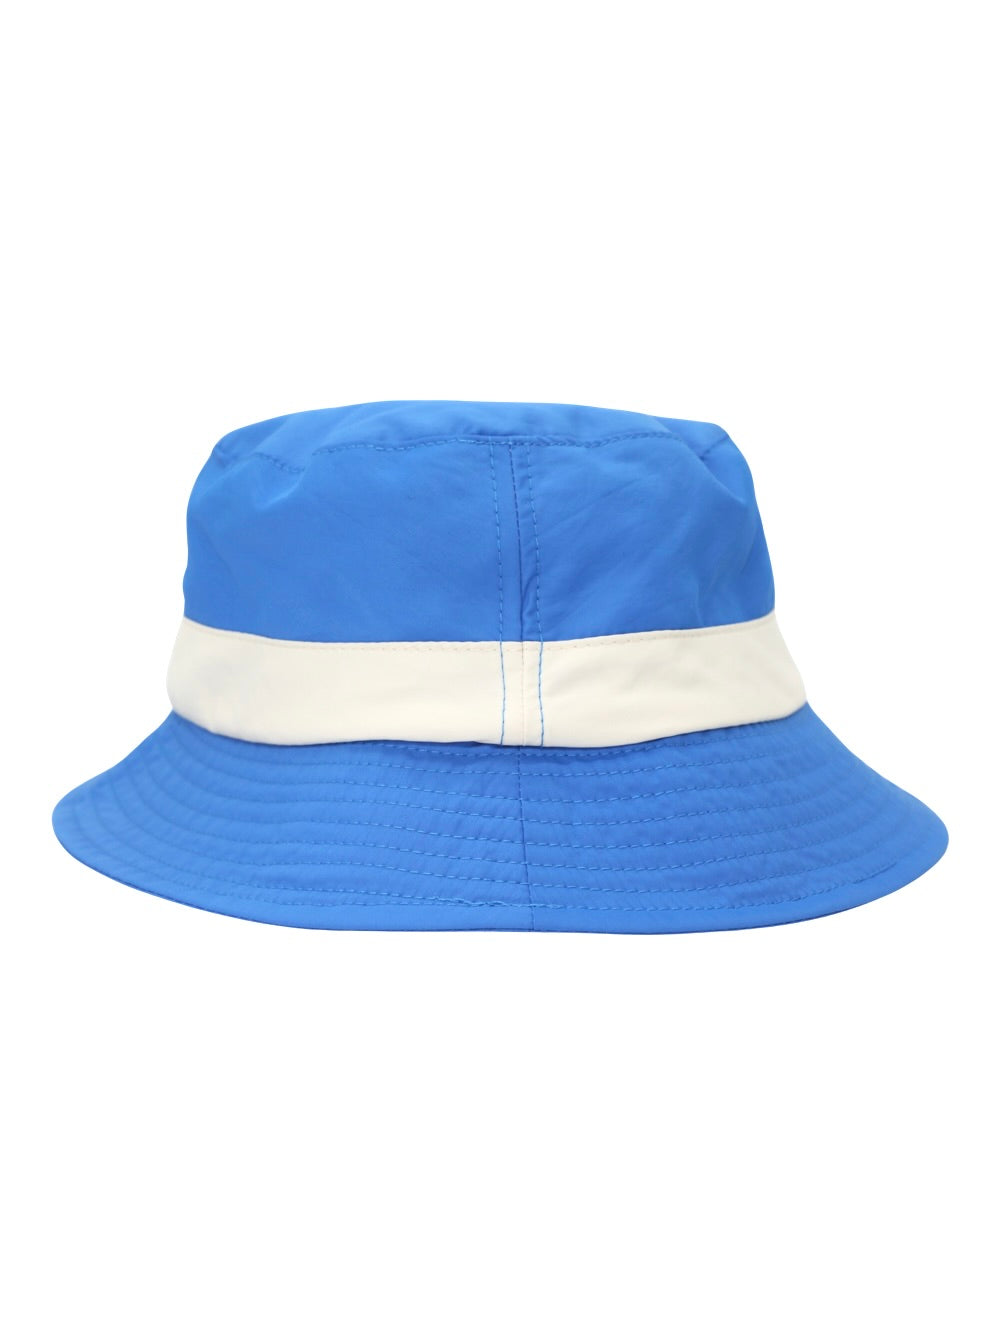 JW Anderson Logo Bucket Hat in Blue/White